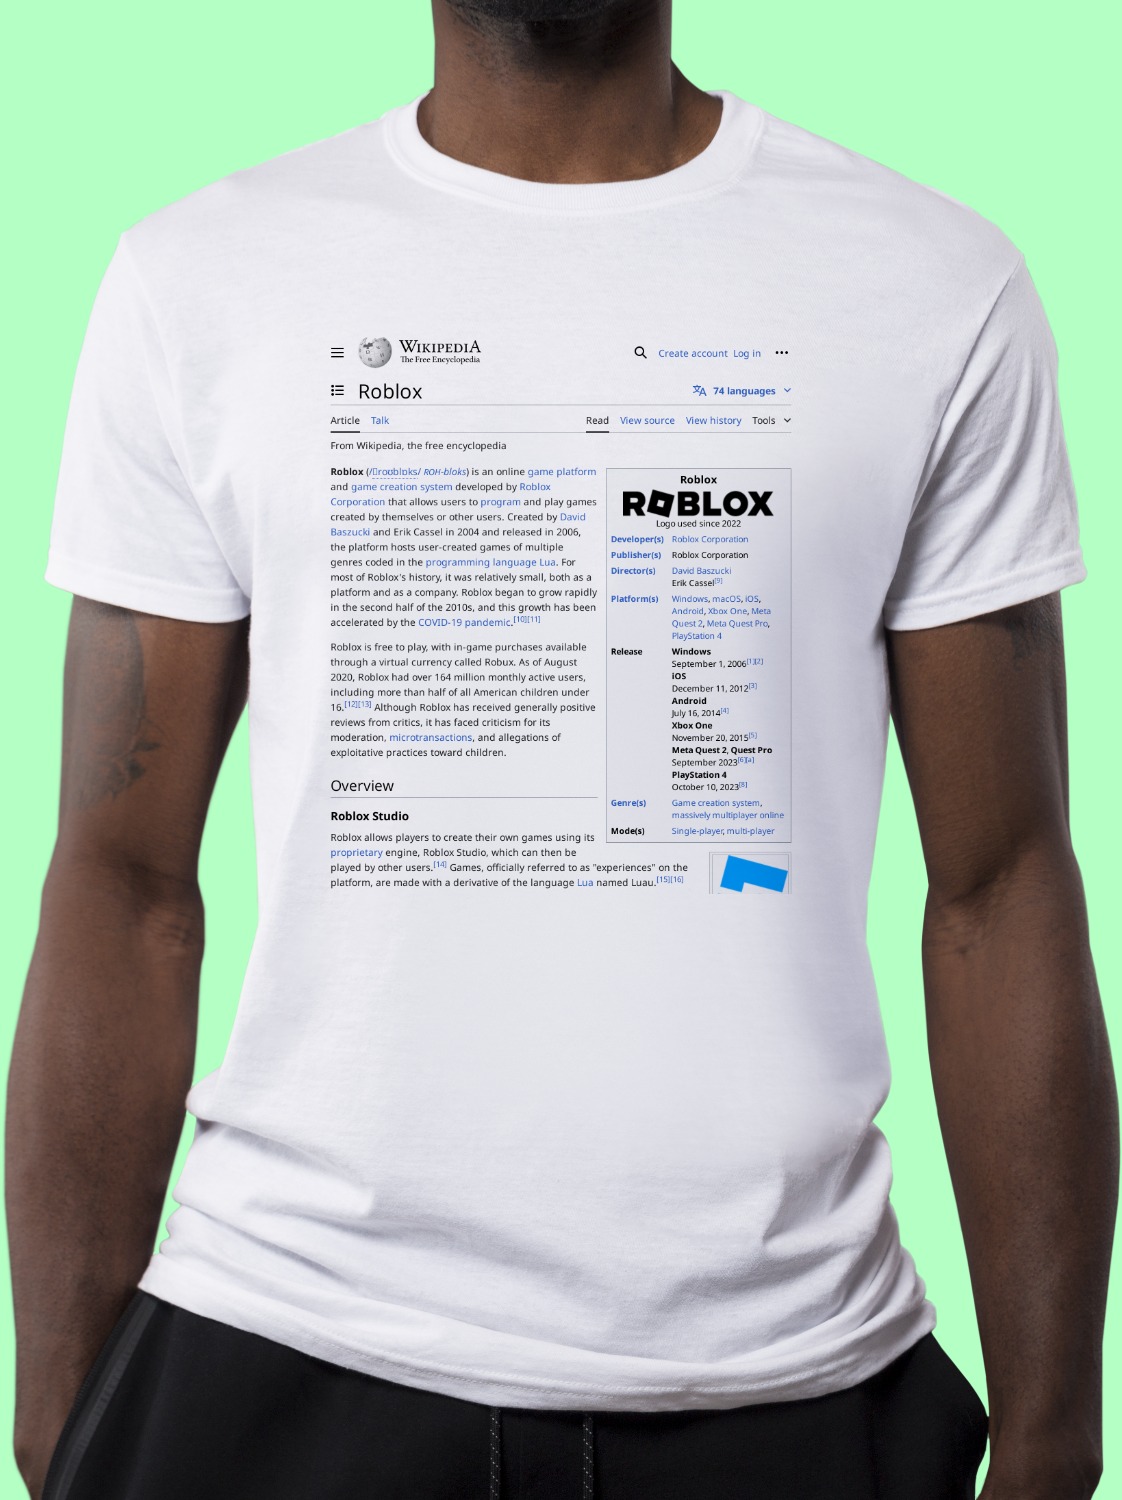 Roblox Wikipedia Shirt